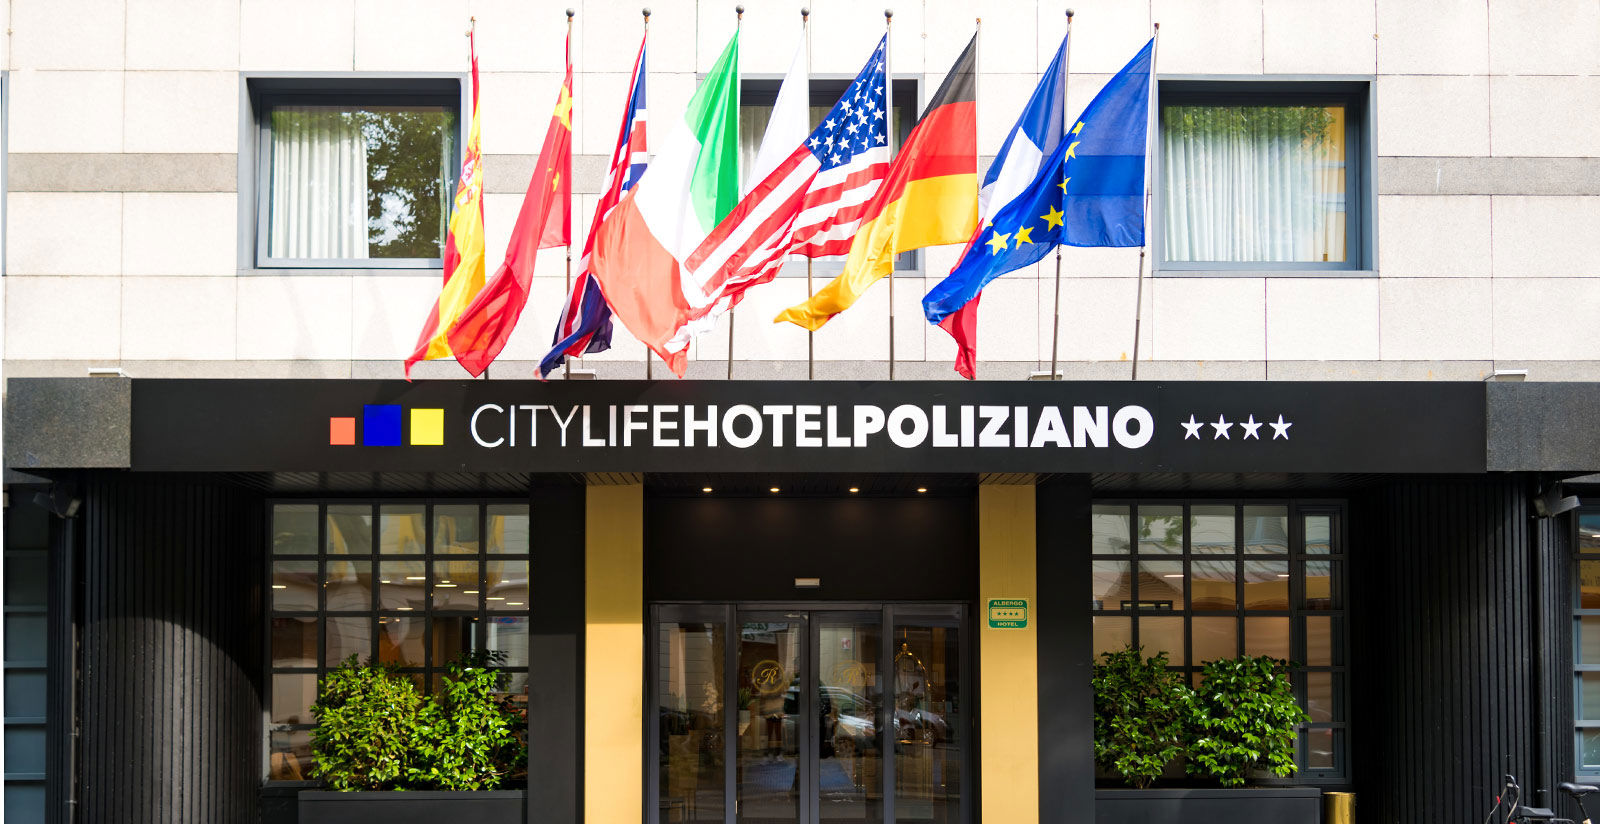 City Life Poliziano - Gds codes 2